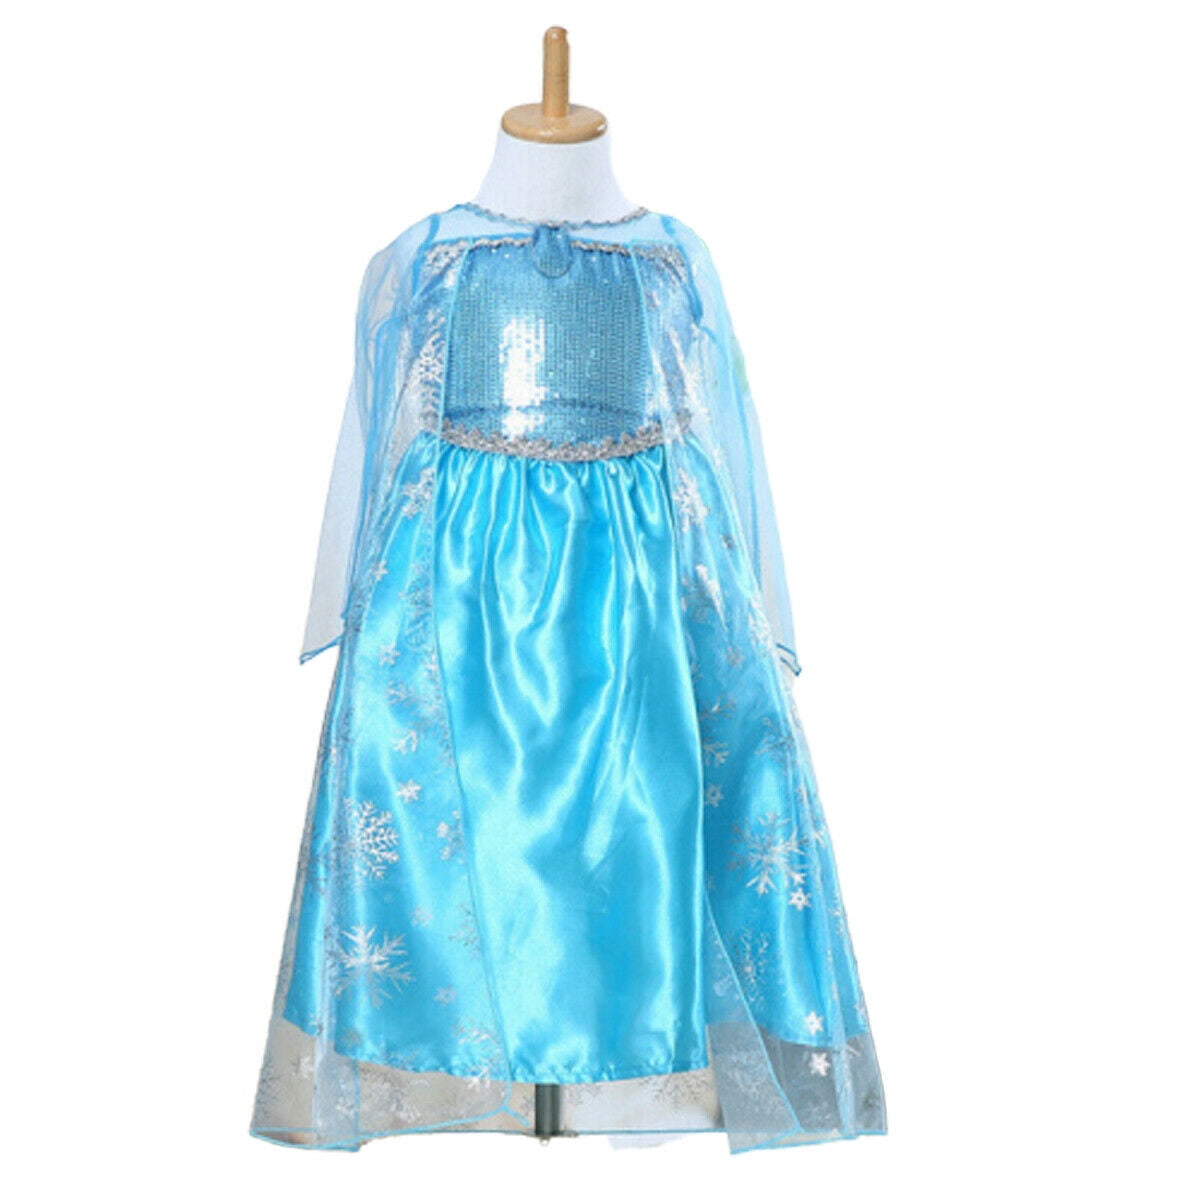 Frozen Elsa Party Dress Blue Fancy cosplay childrens fancy dress gown new kids 